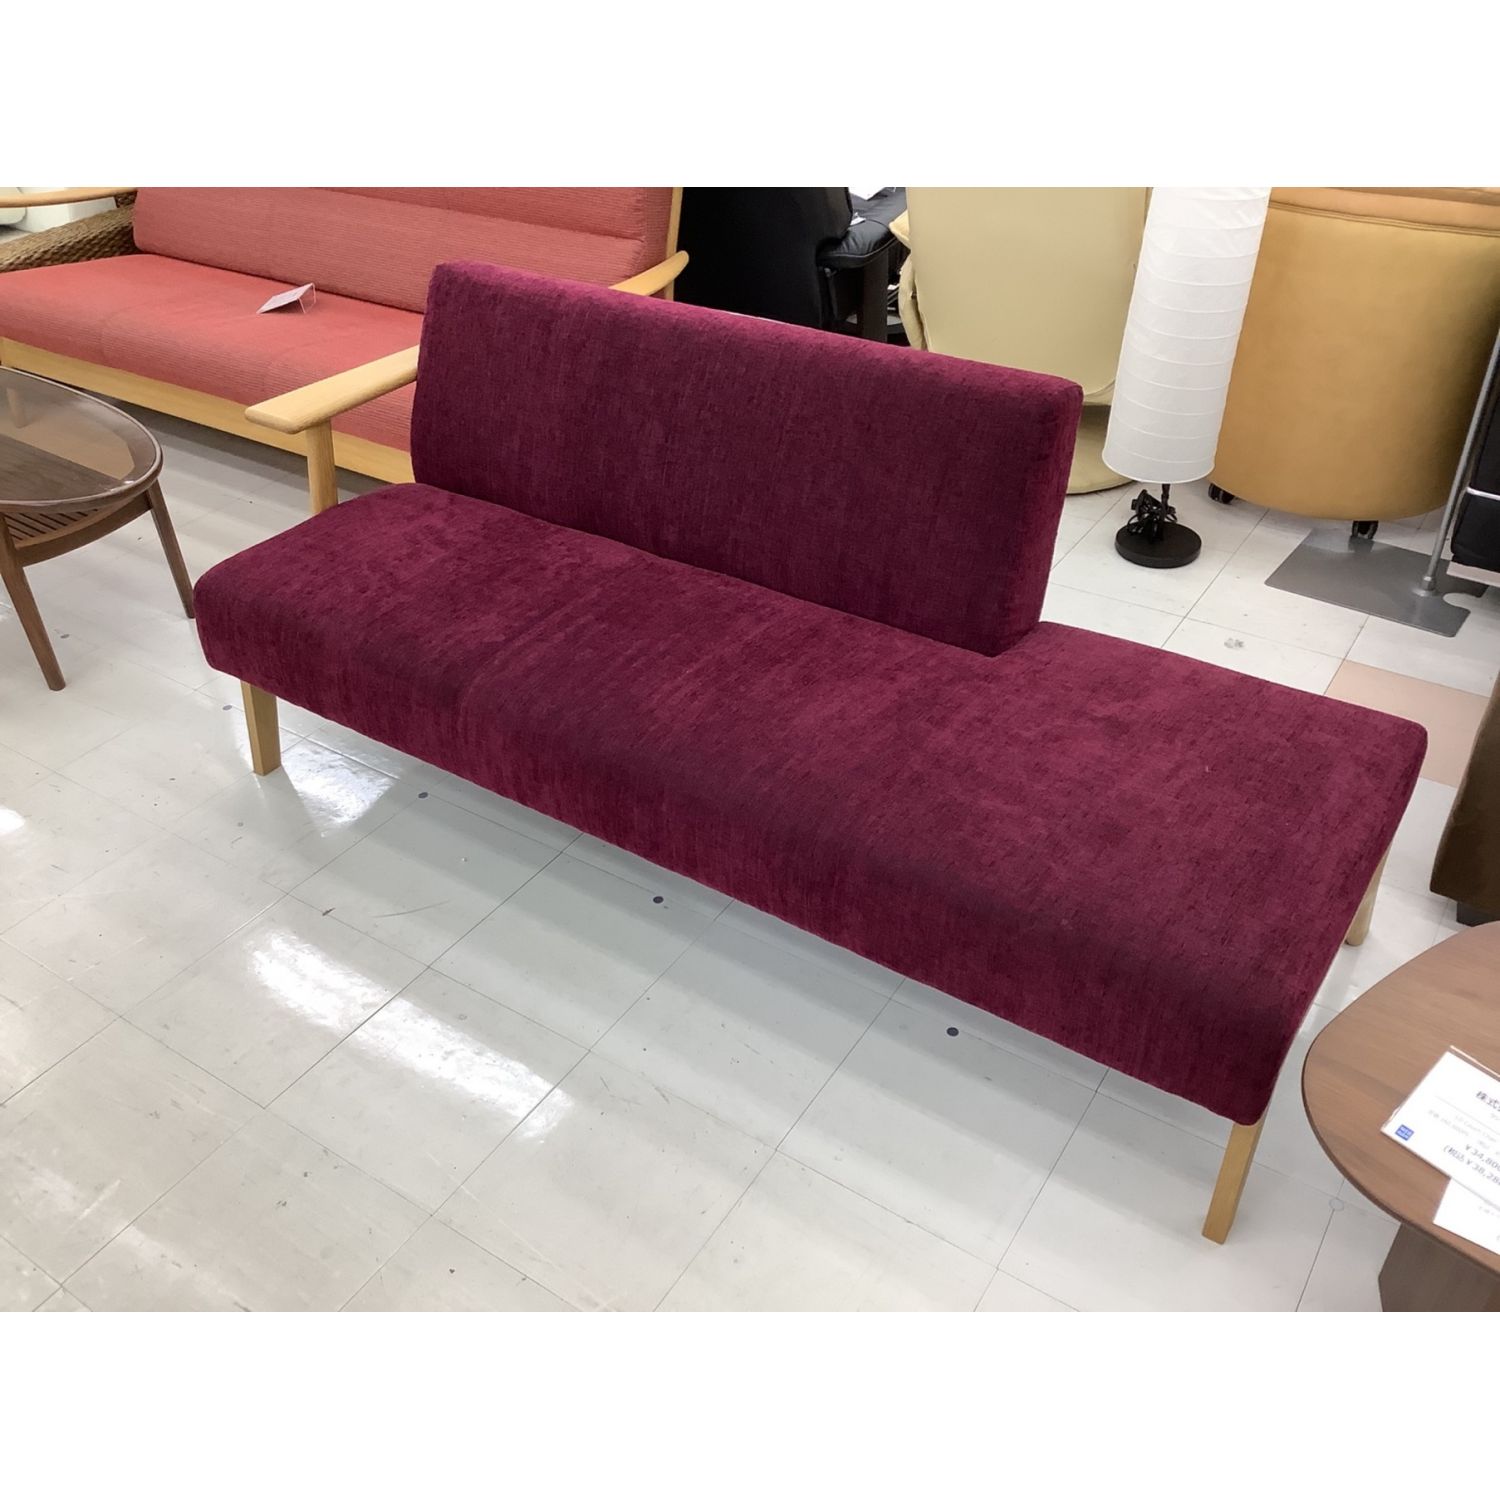 株式会社アサヒ ソファー パープル LDシリーズLD Couch Chair 179